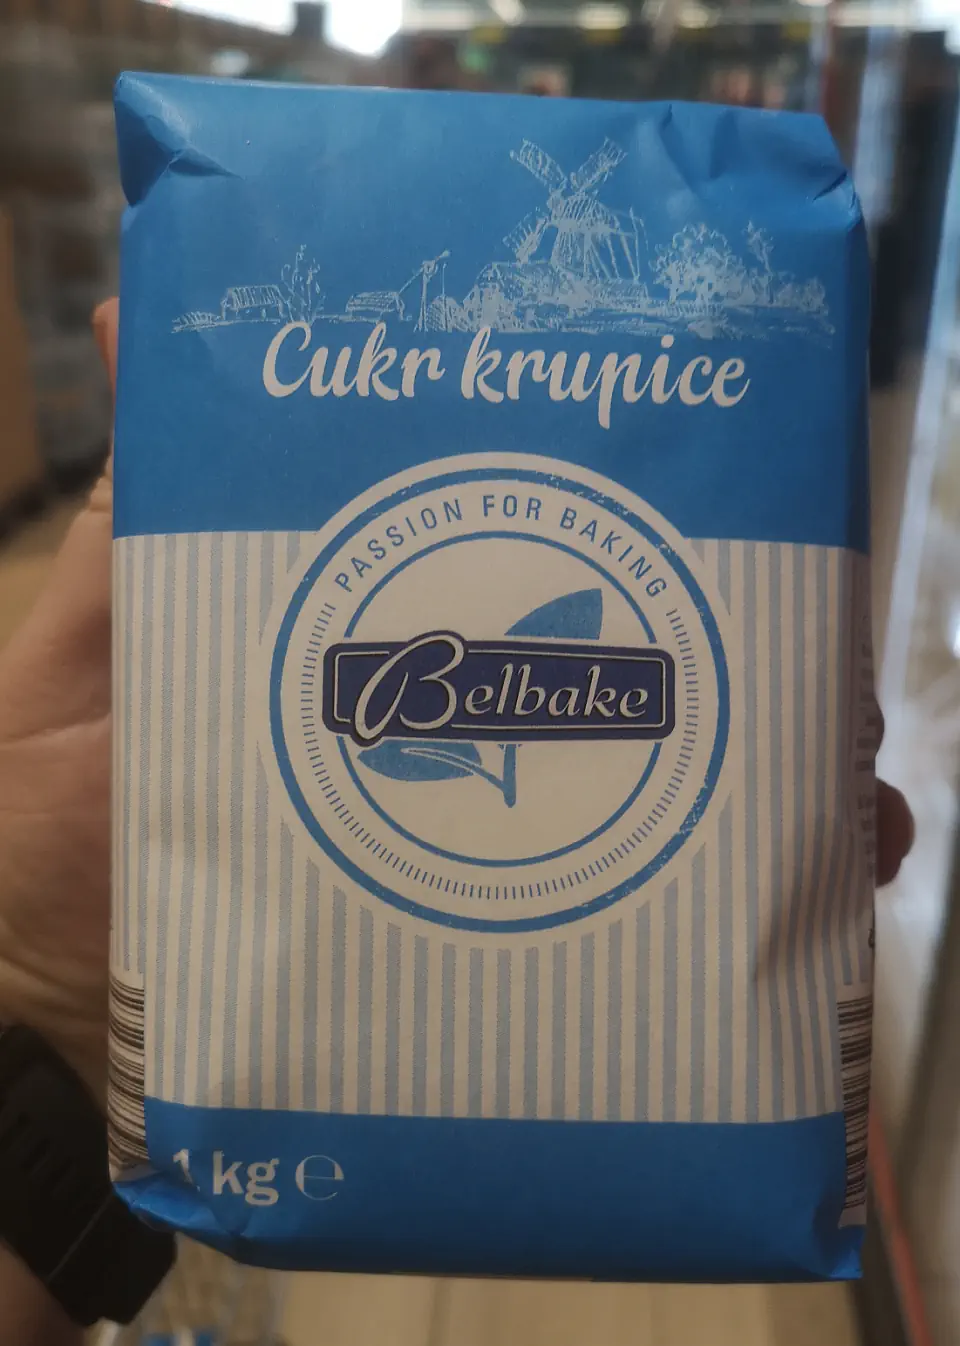 Cukr krupice Belbake